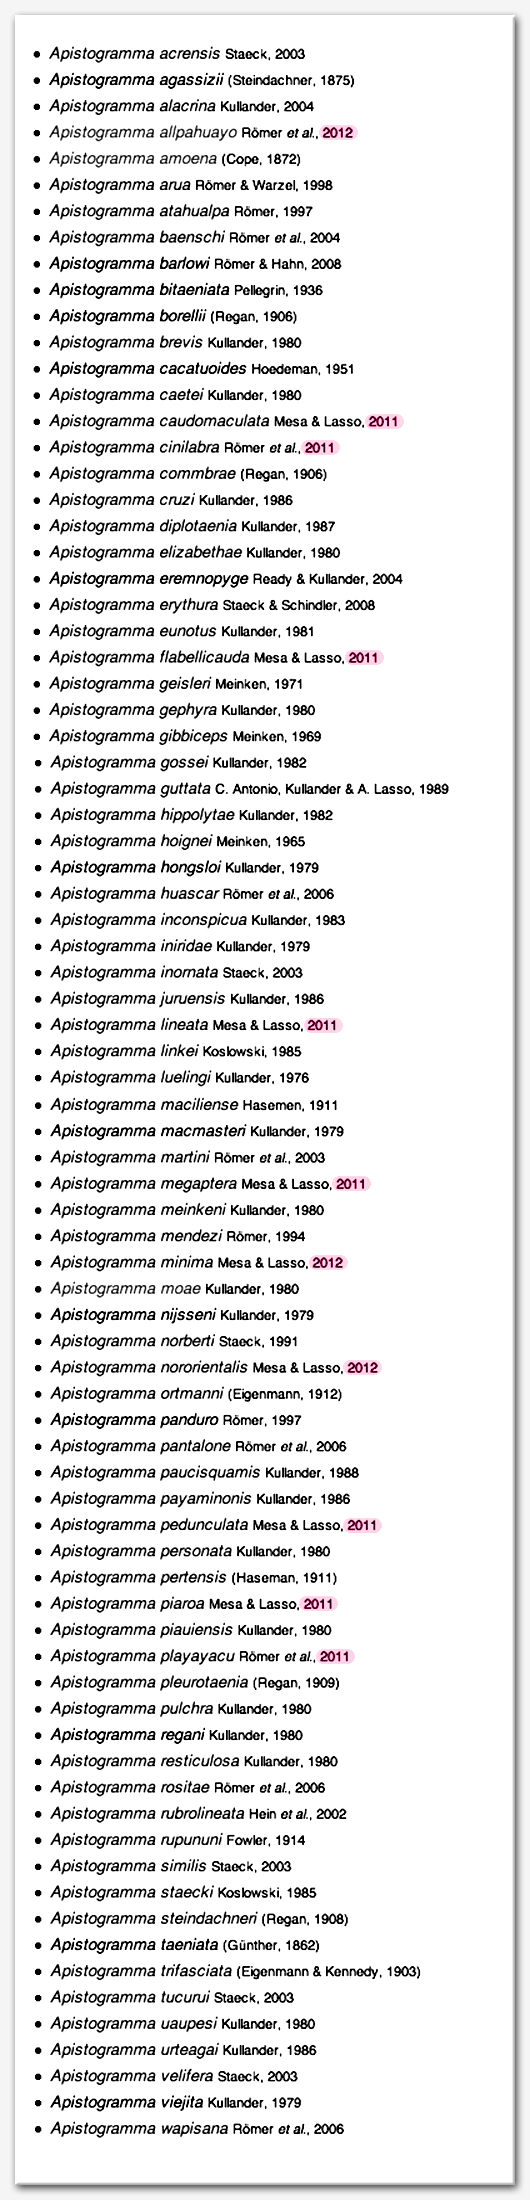 Apistogramma-List 2012